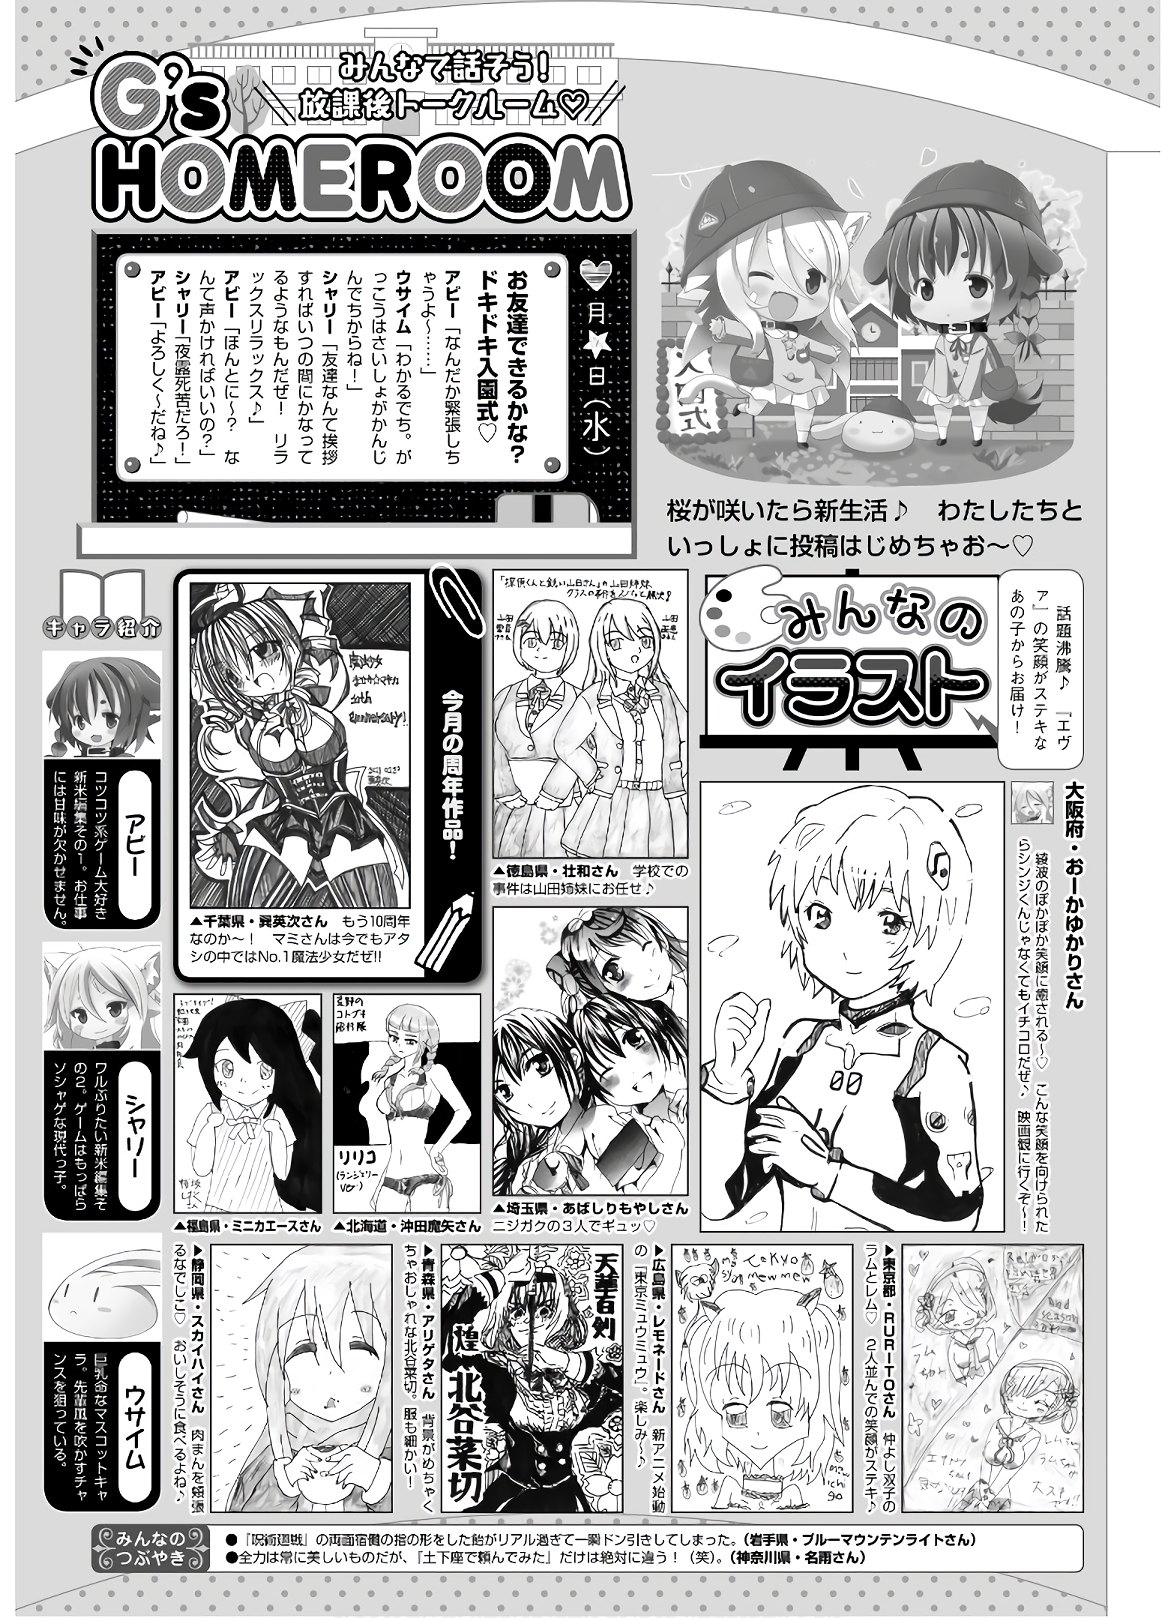 Dengeki G's Magazine #286 - May 2021 138